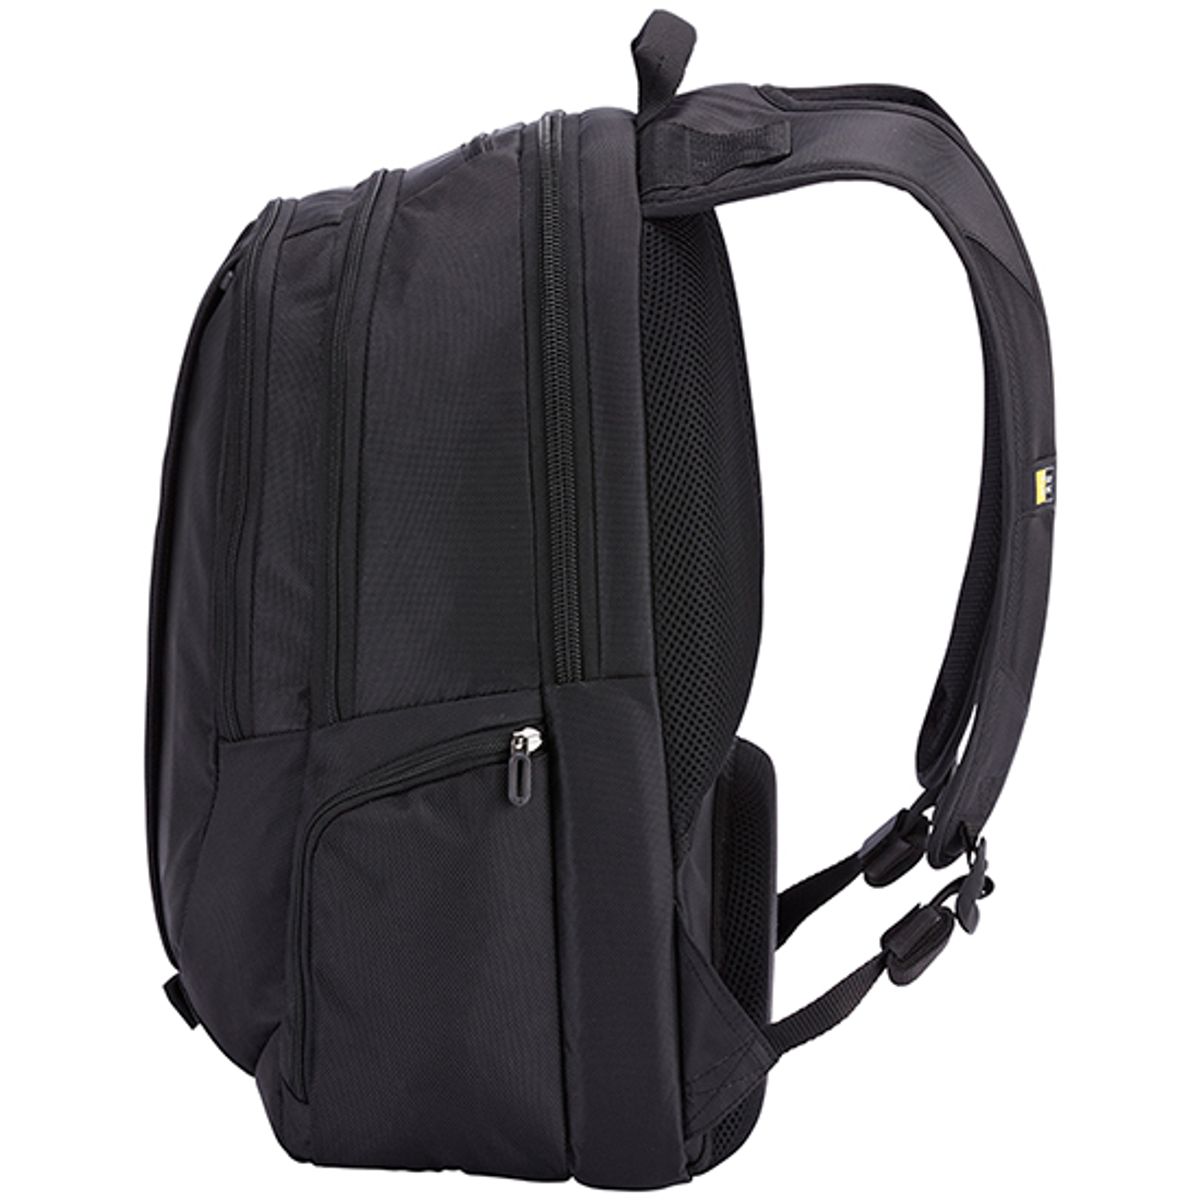 Case Logic 15.6" Laptop Backpack